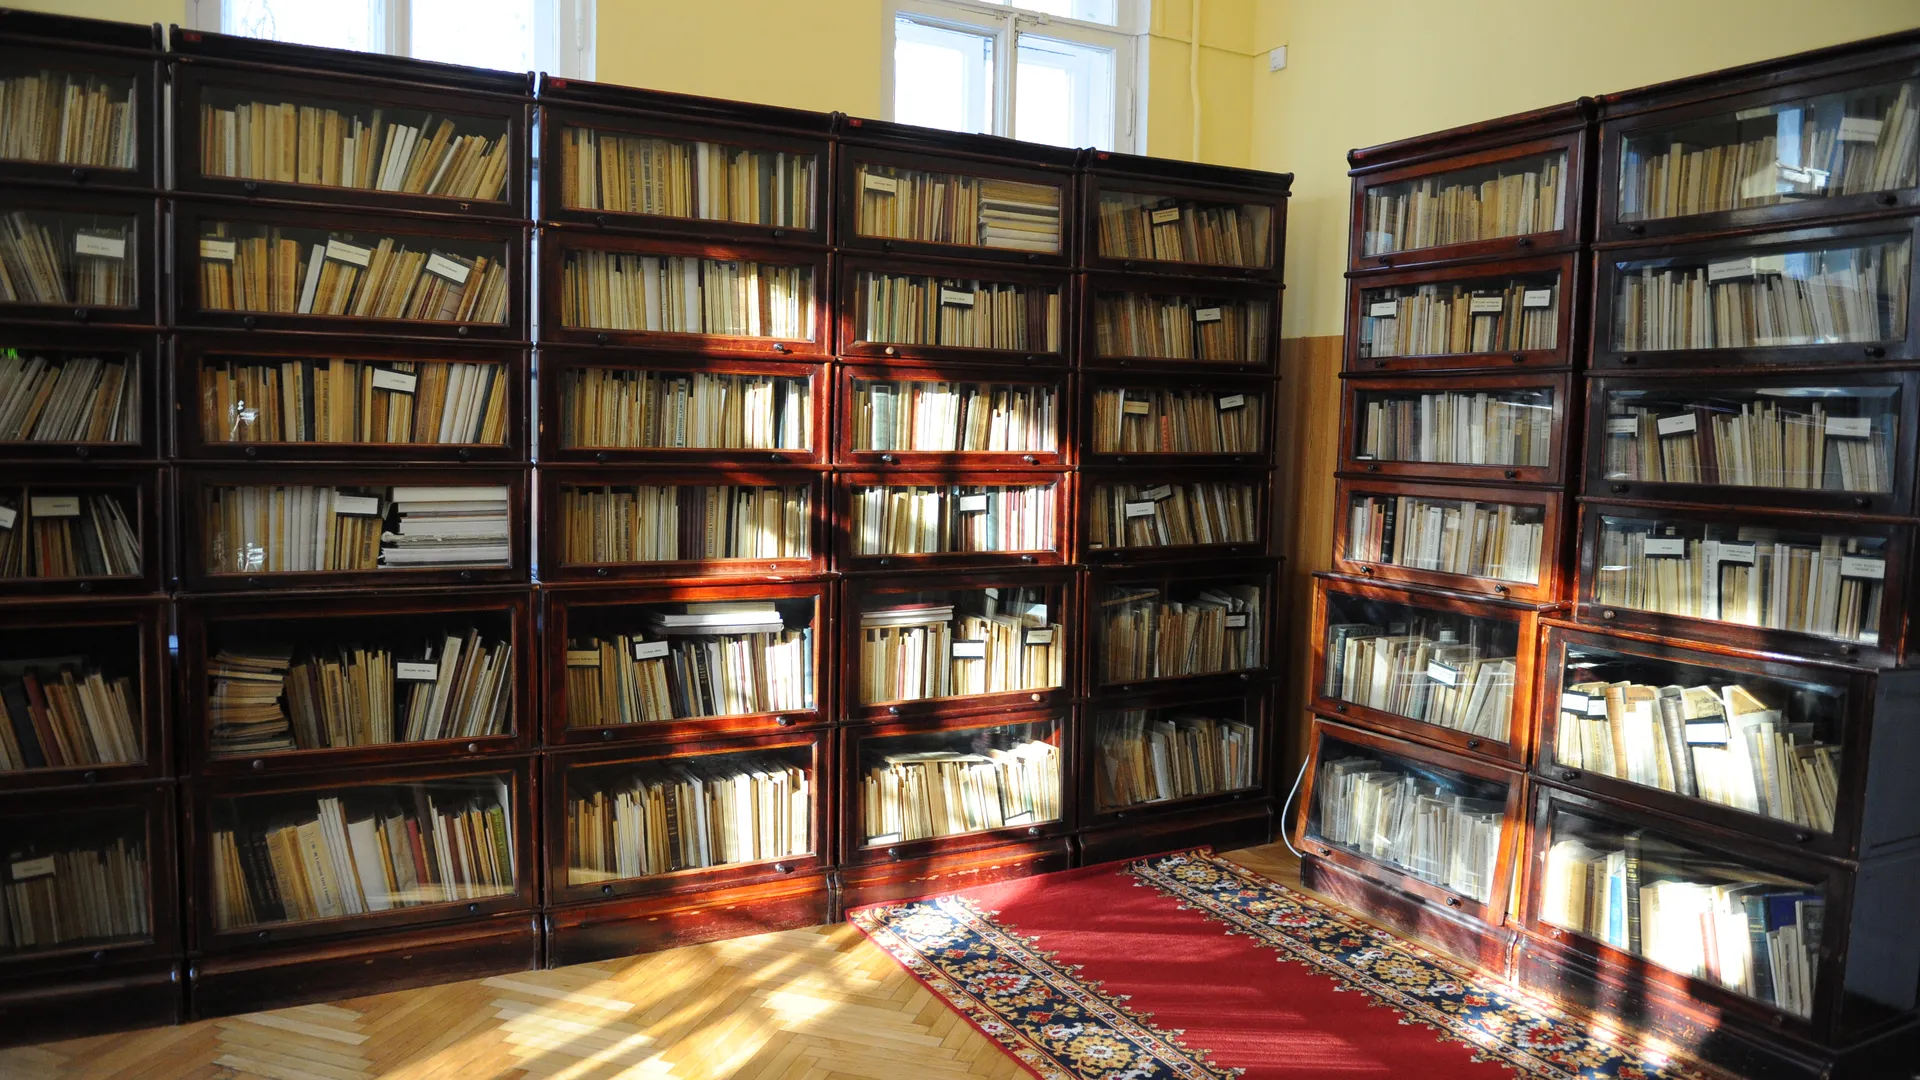 Издания русских классиков массово пропадают из библиотек по всей Европе